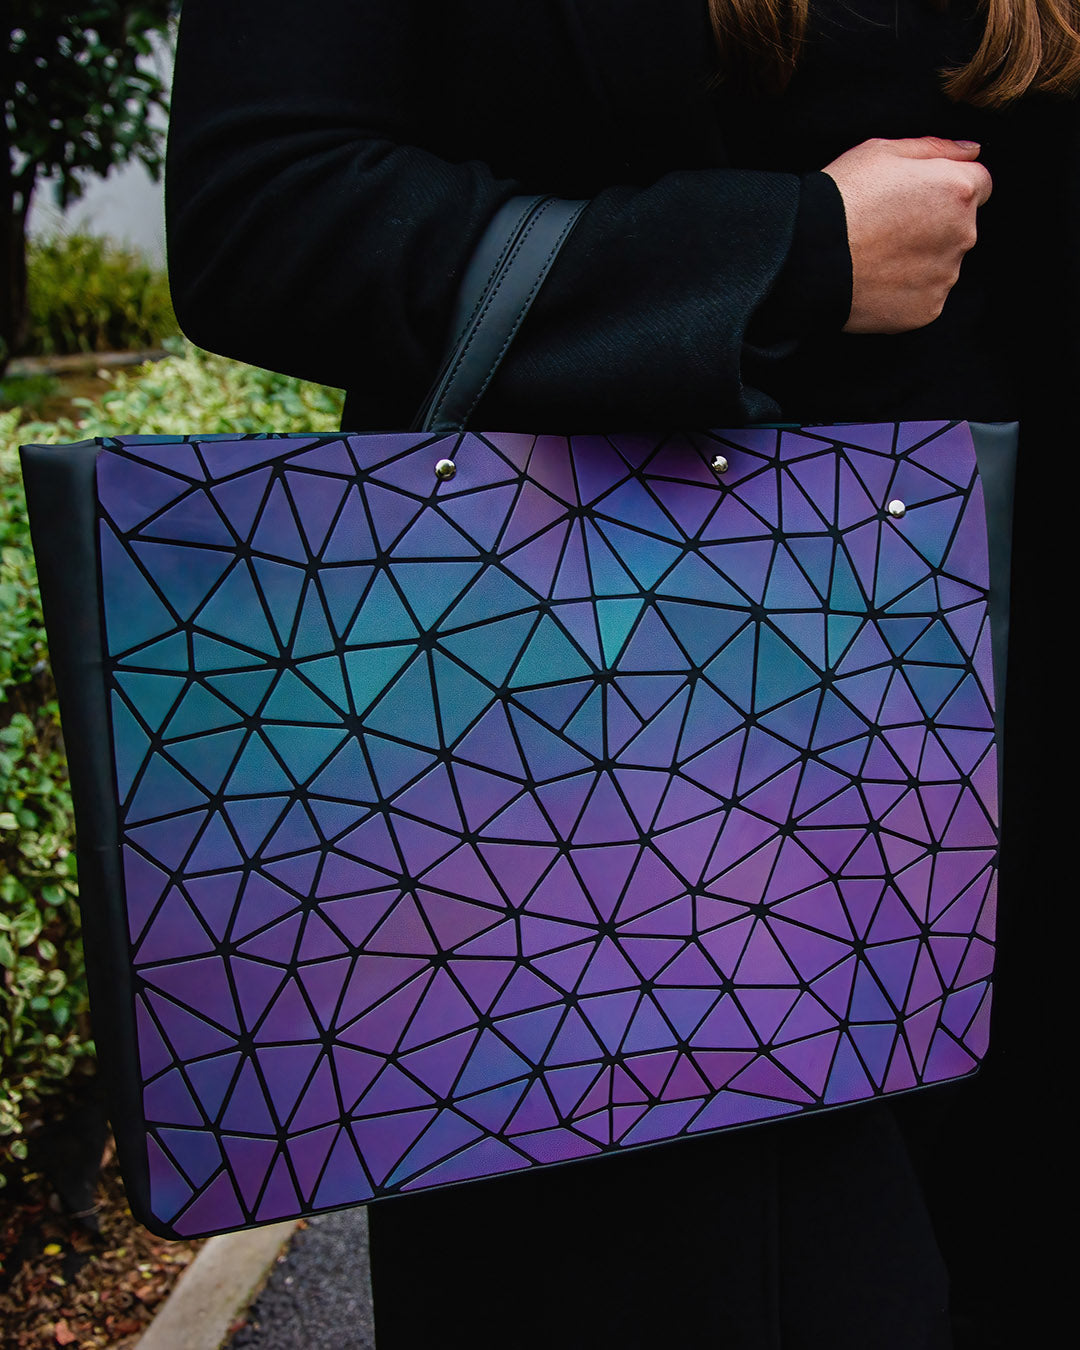 Lummi Atina torba za laptop, koja kombinuje stil i funkcionalnost sa efektom promene boje